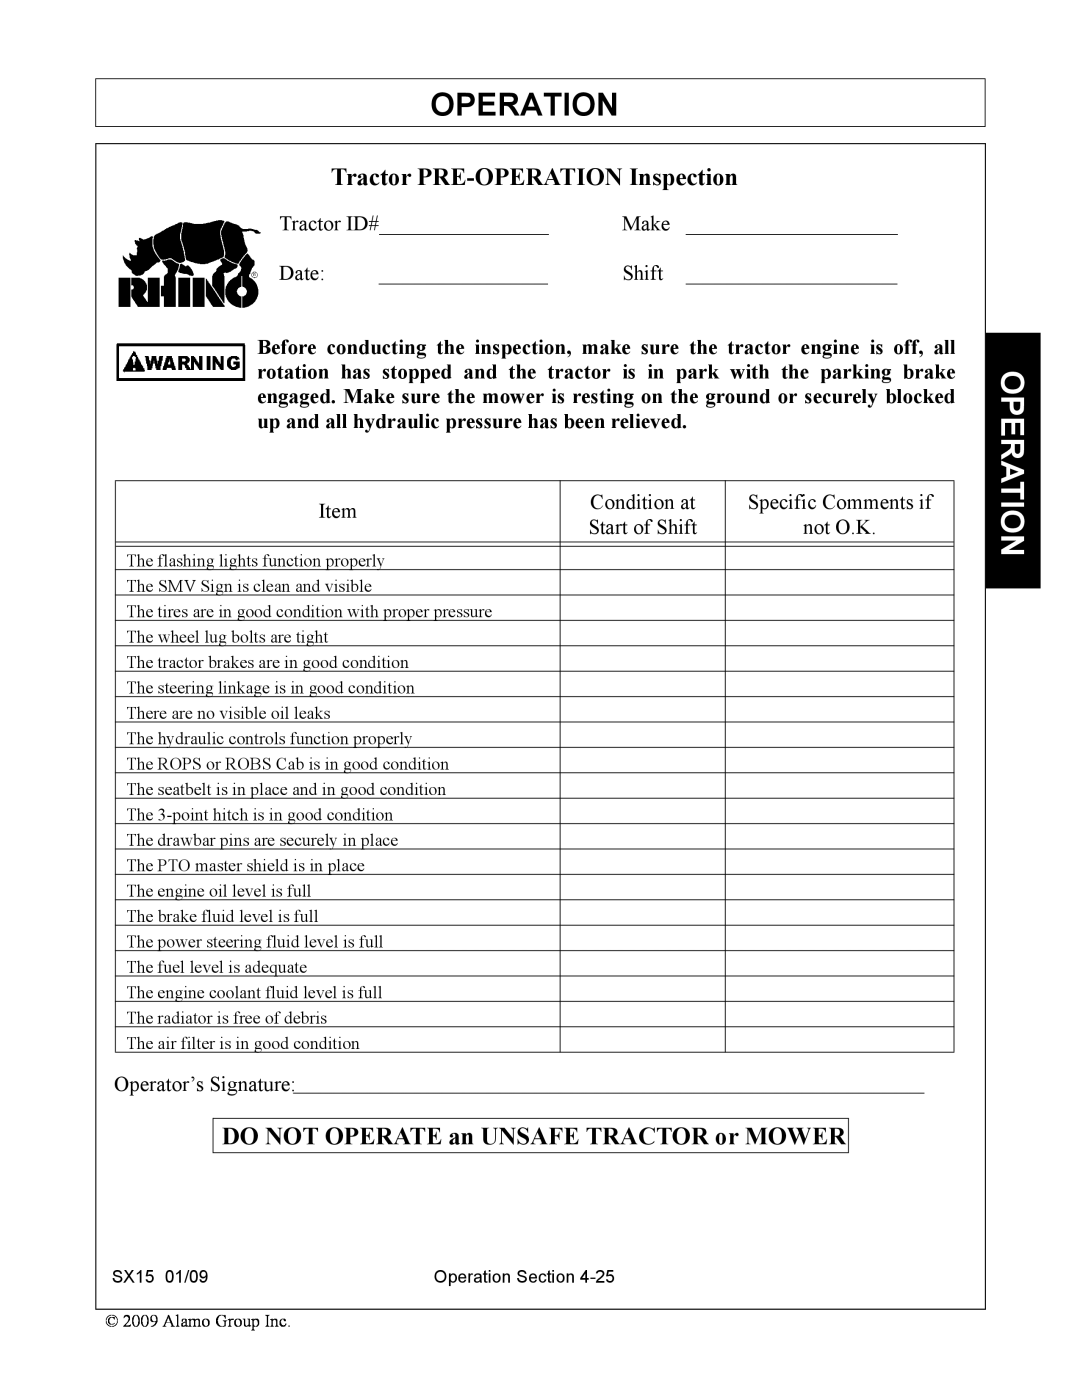 Alamo SX15 manual Tractor PRE-OPERATION Inspection, Operation, DO NOT OPERATE an UNSAFE TRACTOR or MOWER 